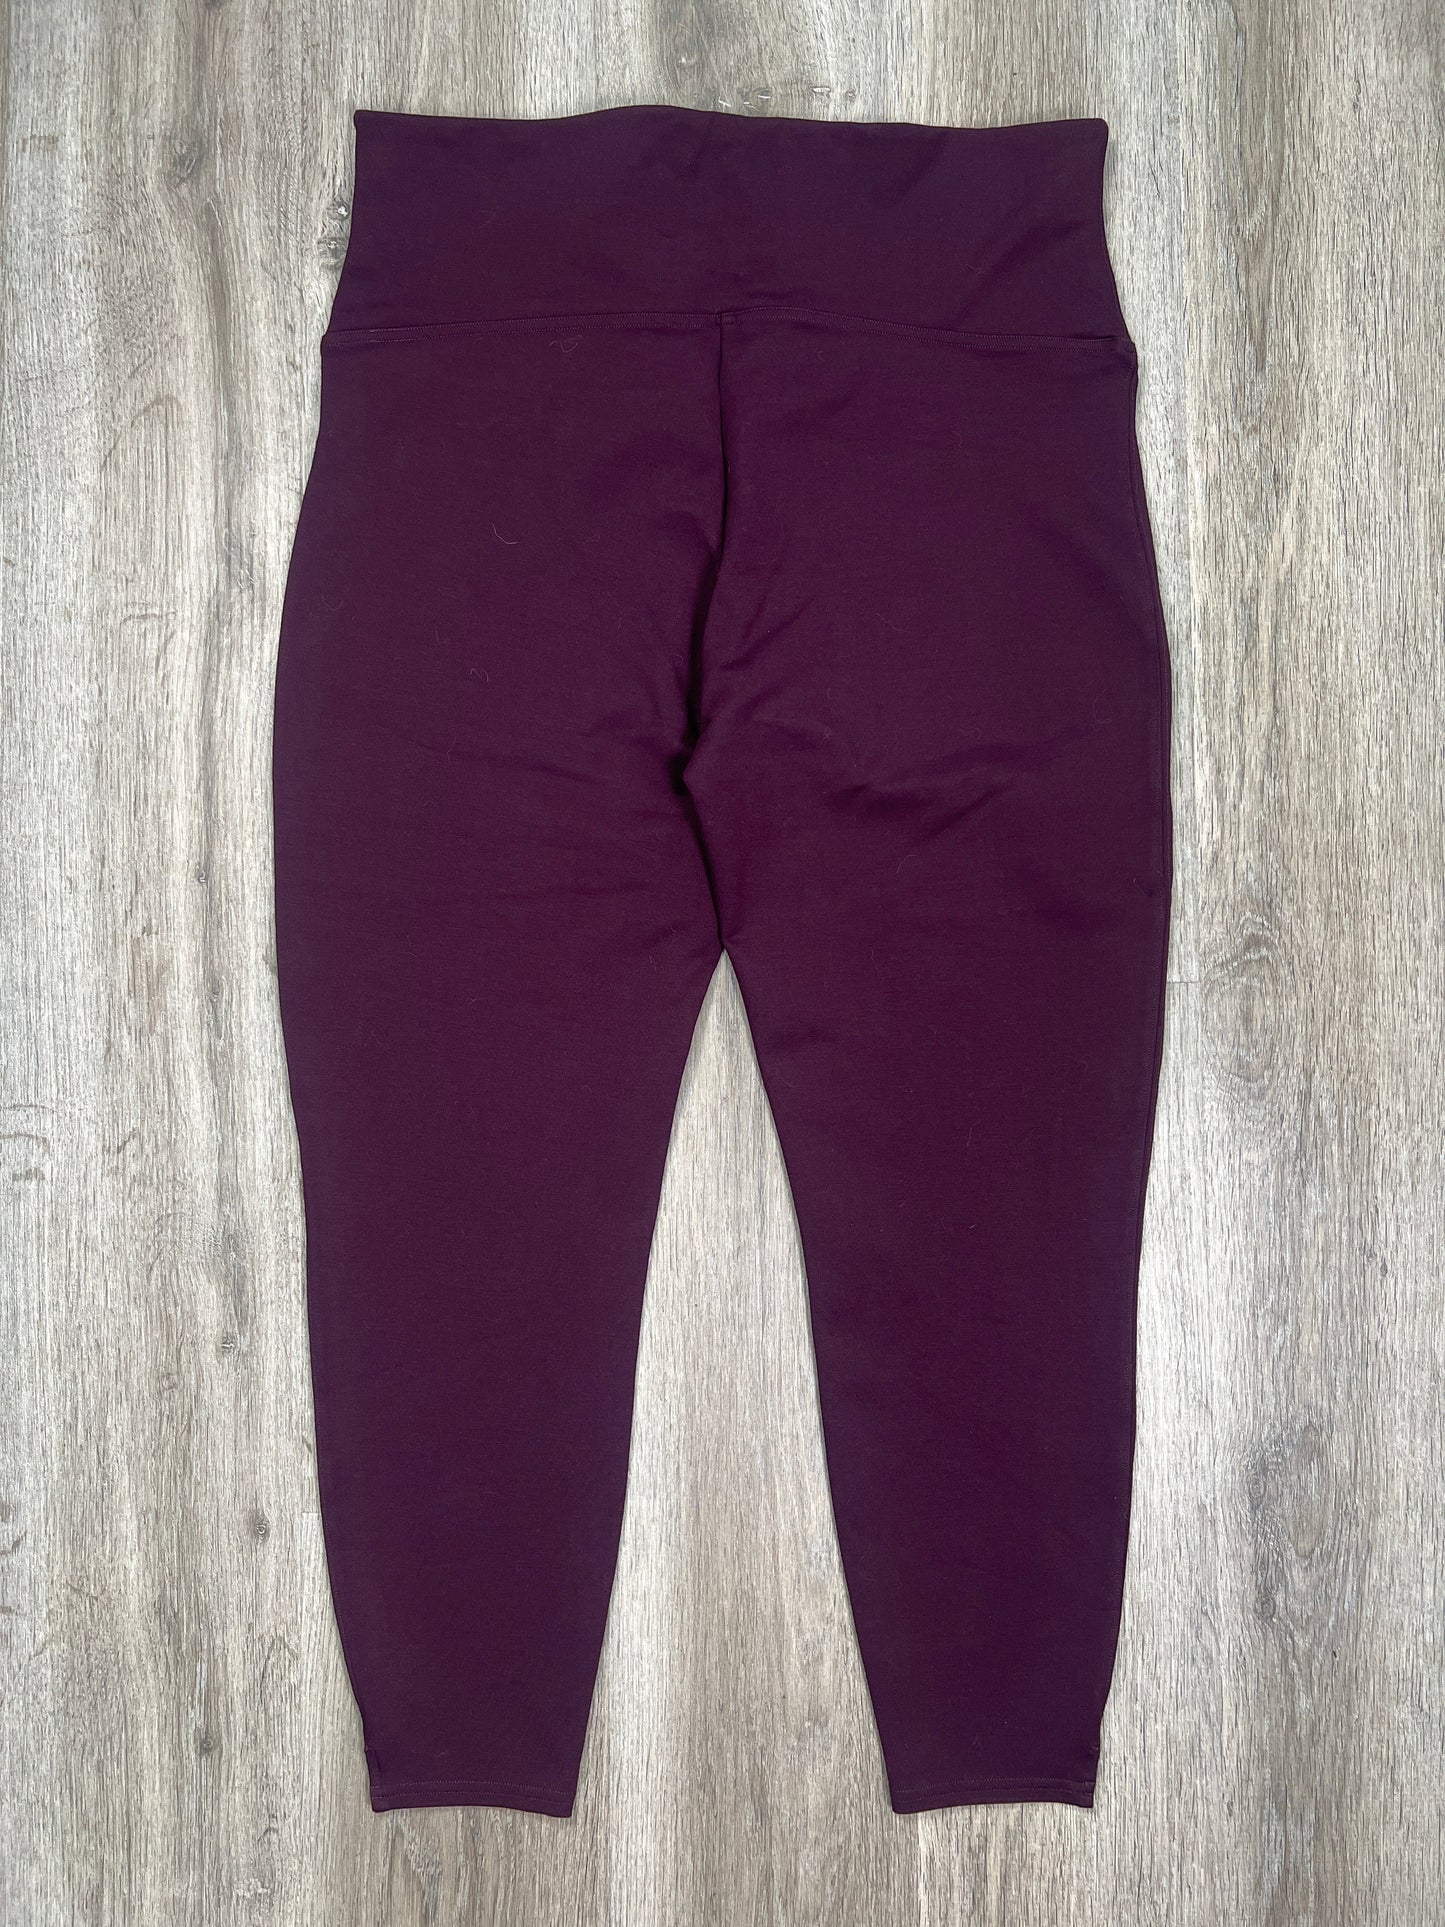 Purple Pants Leggings Spanx, Size 2x